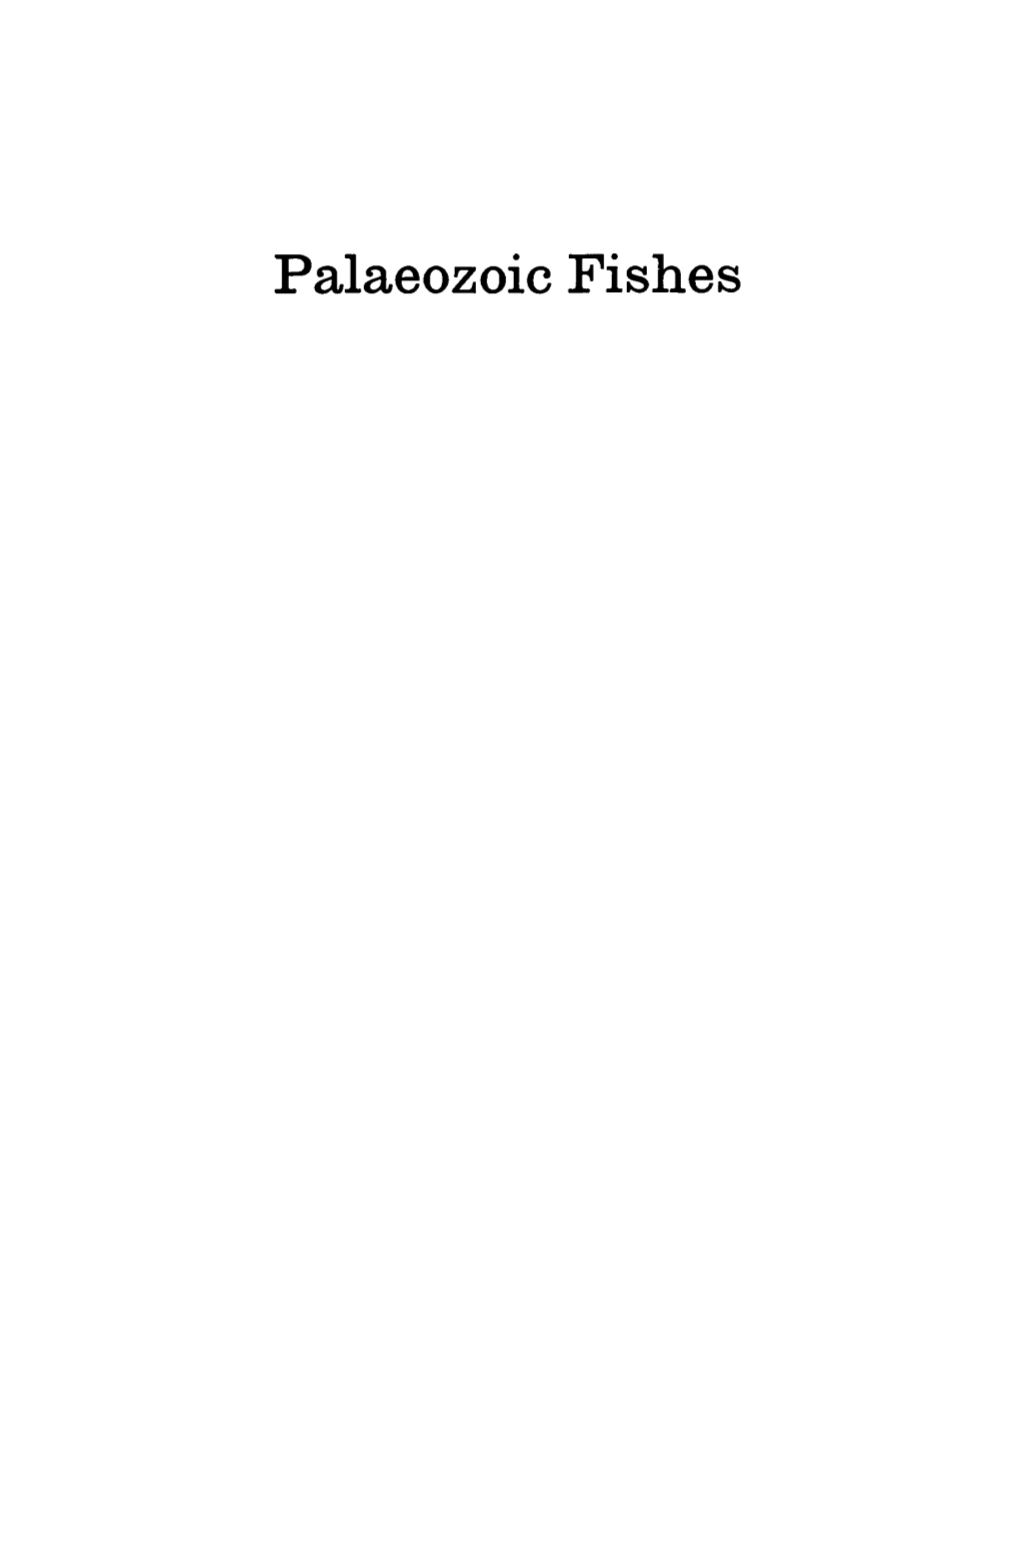 Palaeozoic Fishes PALAEOZOIC FISHES